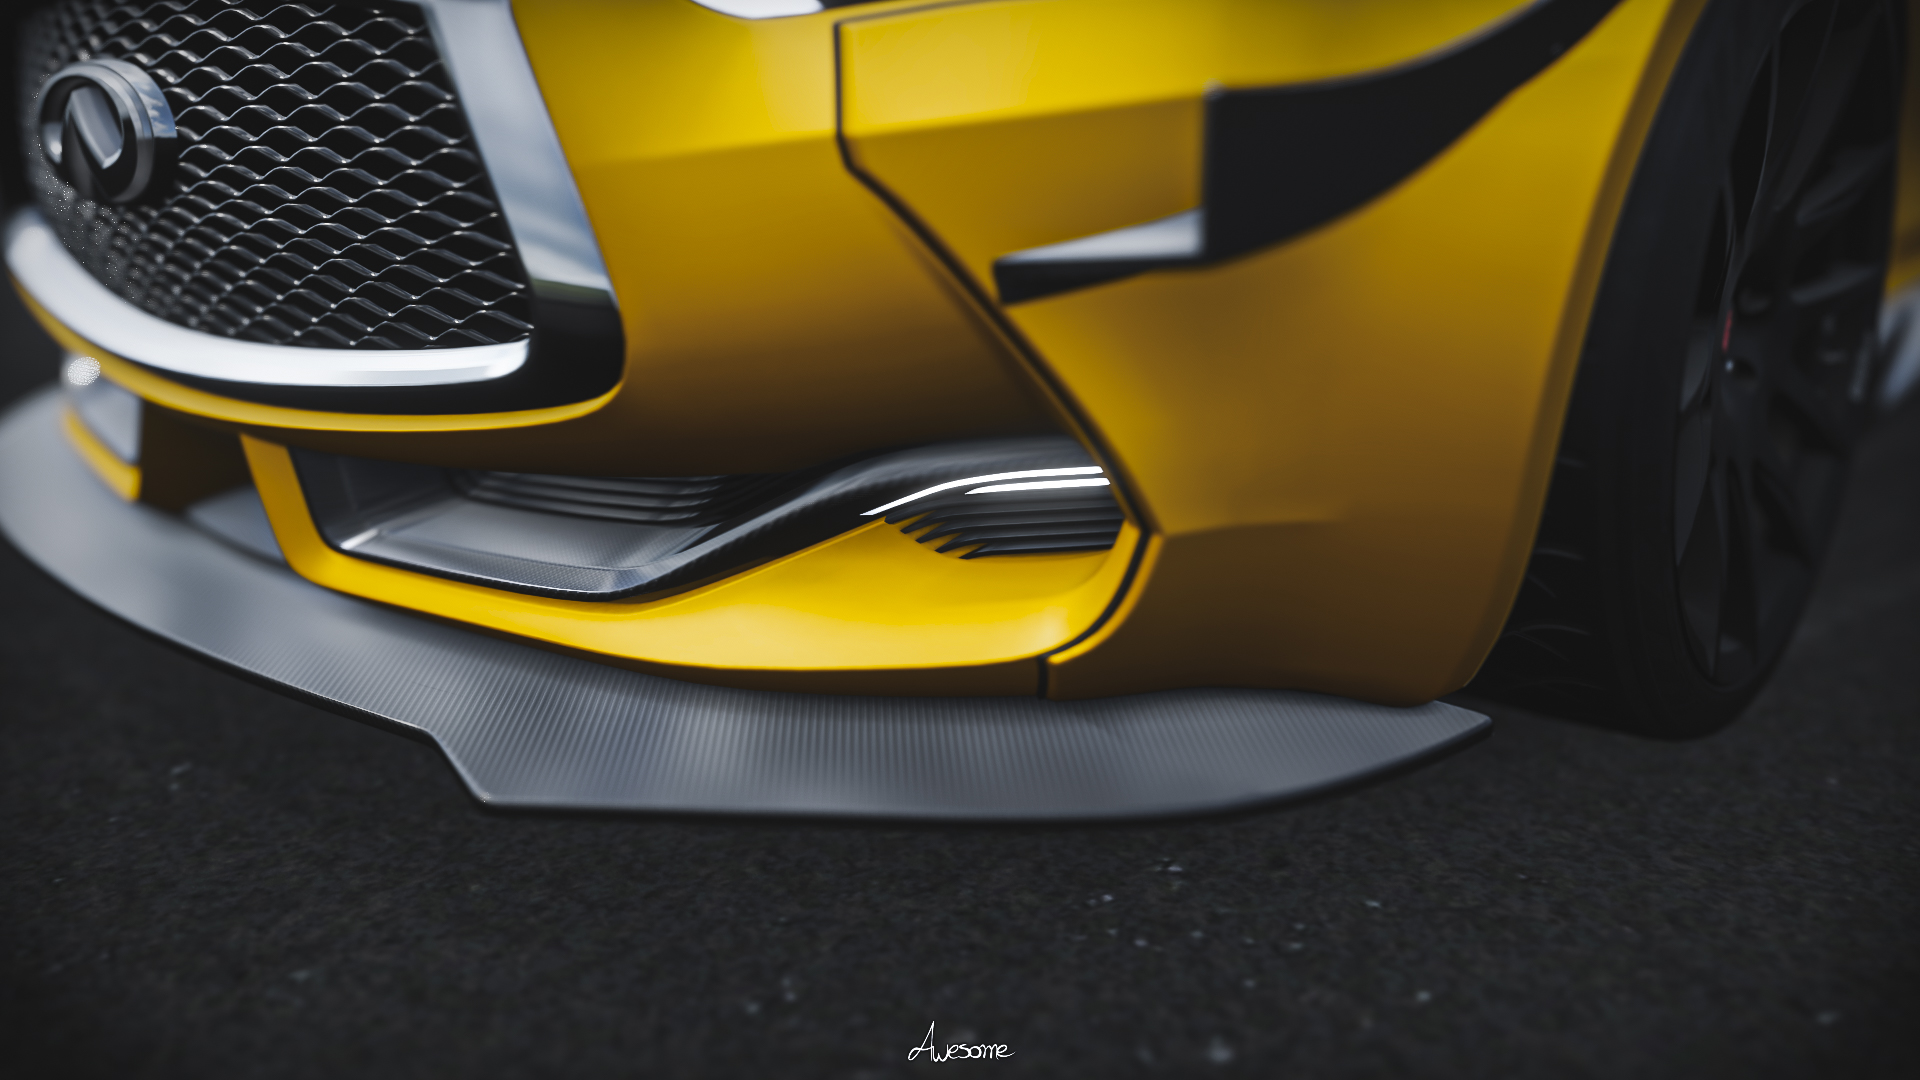 2015 Infiniti Q60 Coupe Infiniti Car Vehicle Forza Forza Horizon 4 Video Games Yellow Cars 1920x1080